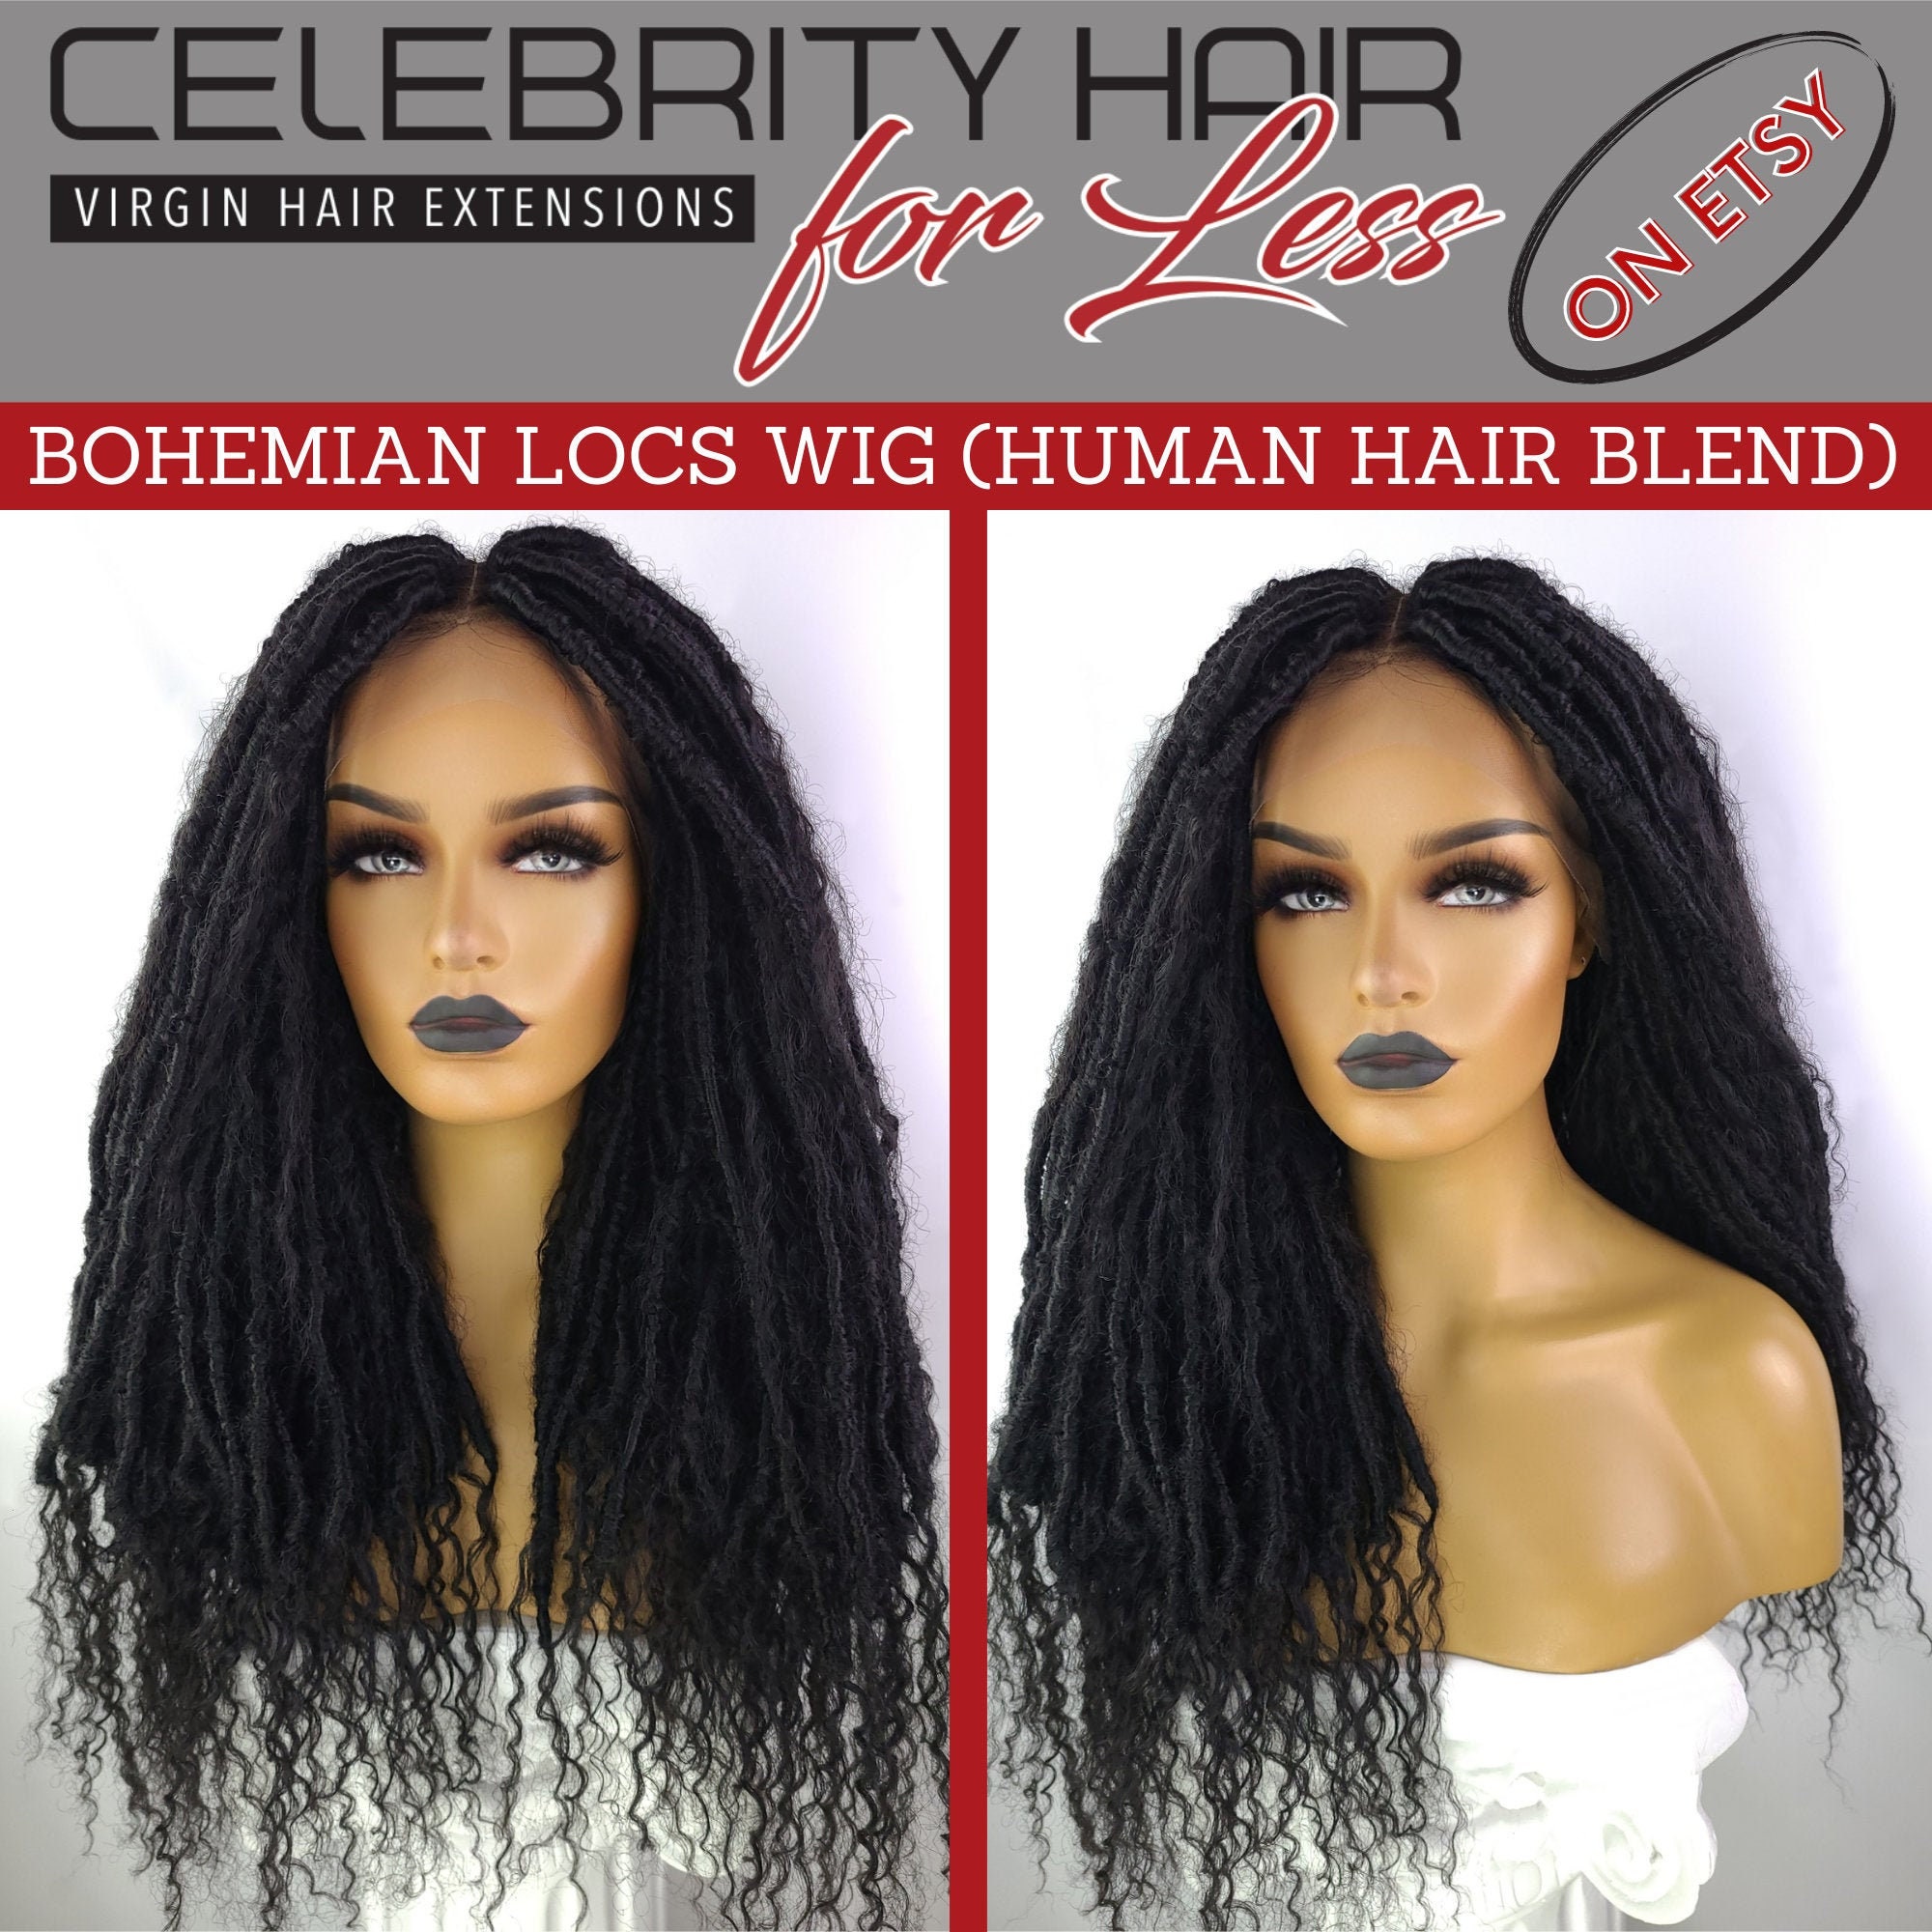 Bohemian Locs Wig | Human Hair Blend, 24 Inches